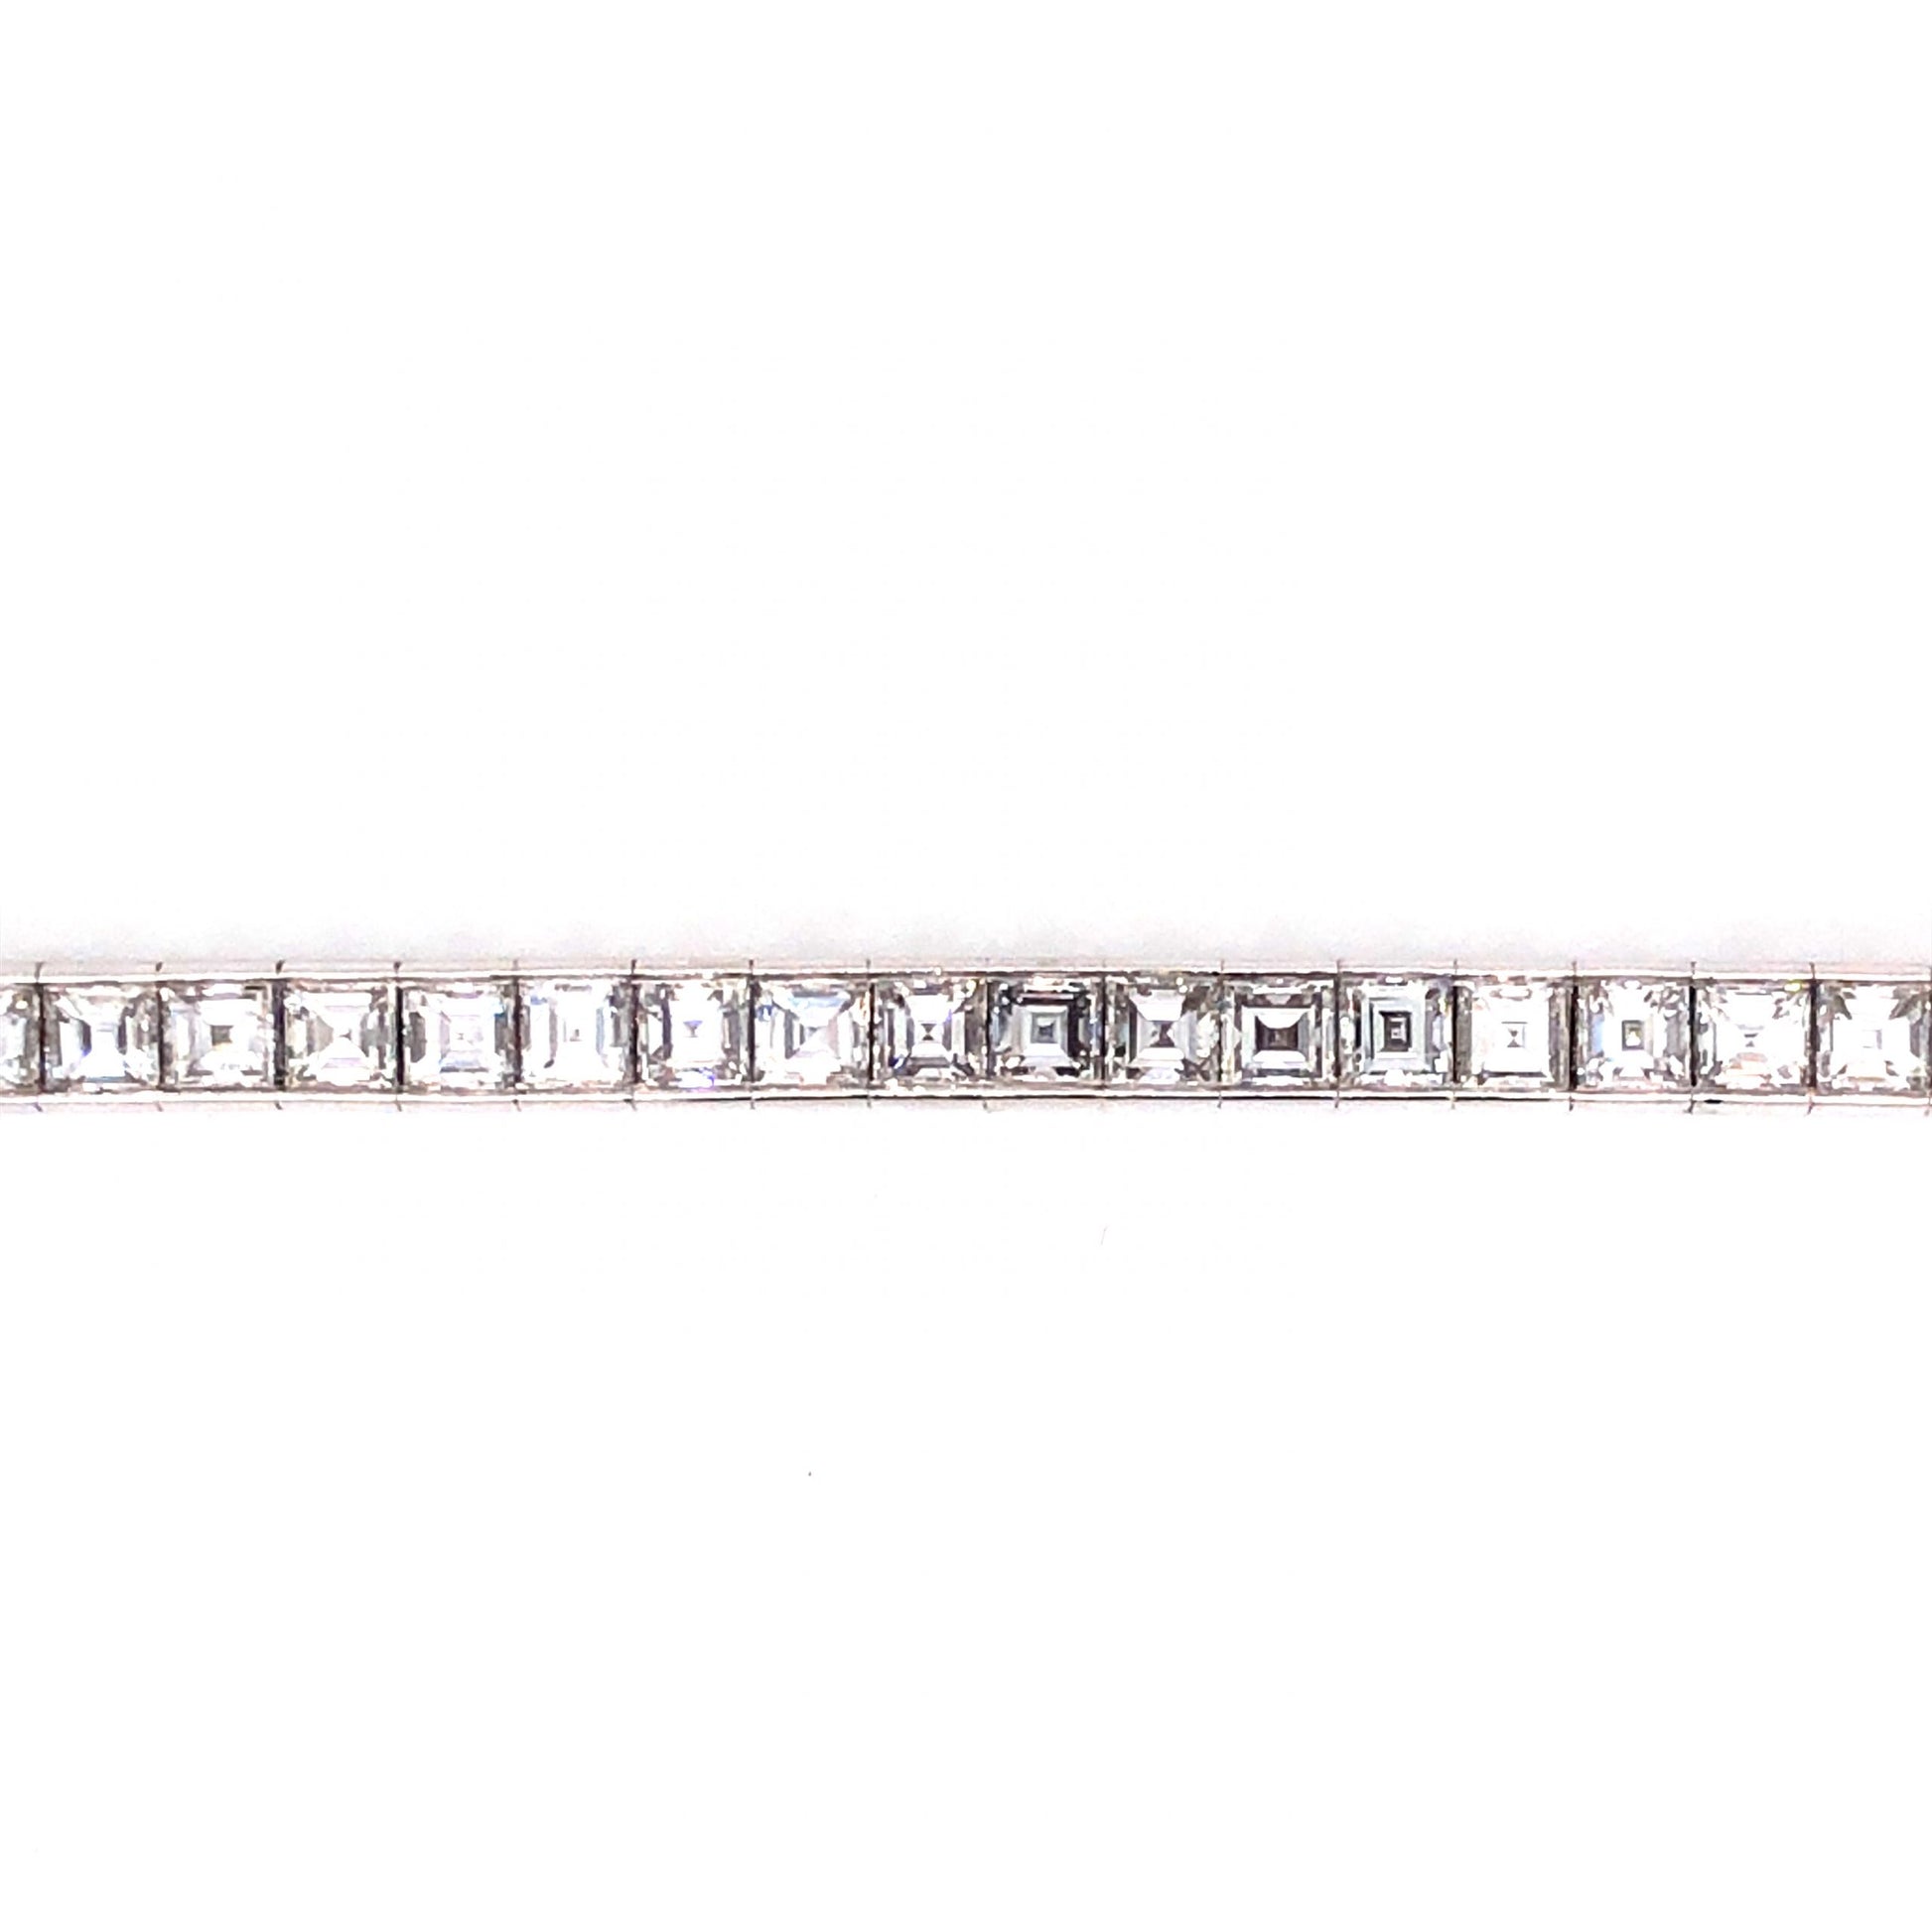 8.40 Square Cut Diamond Tennis Bracelet in Platinum